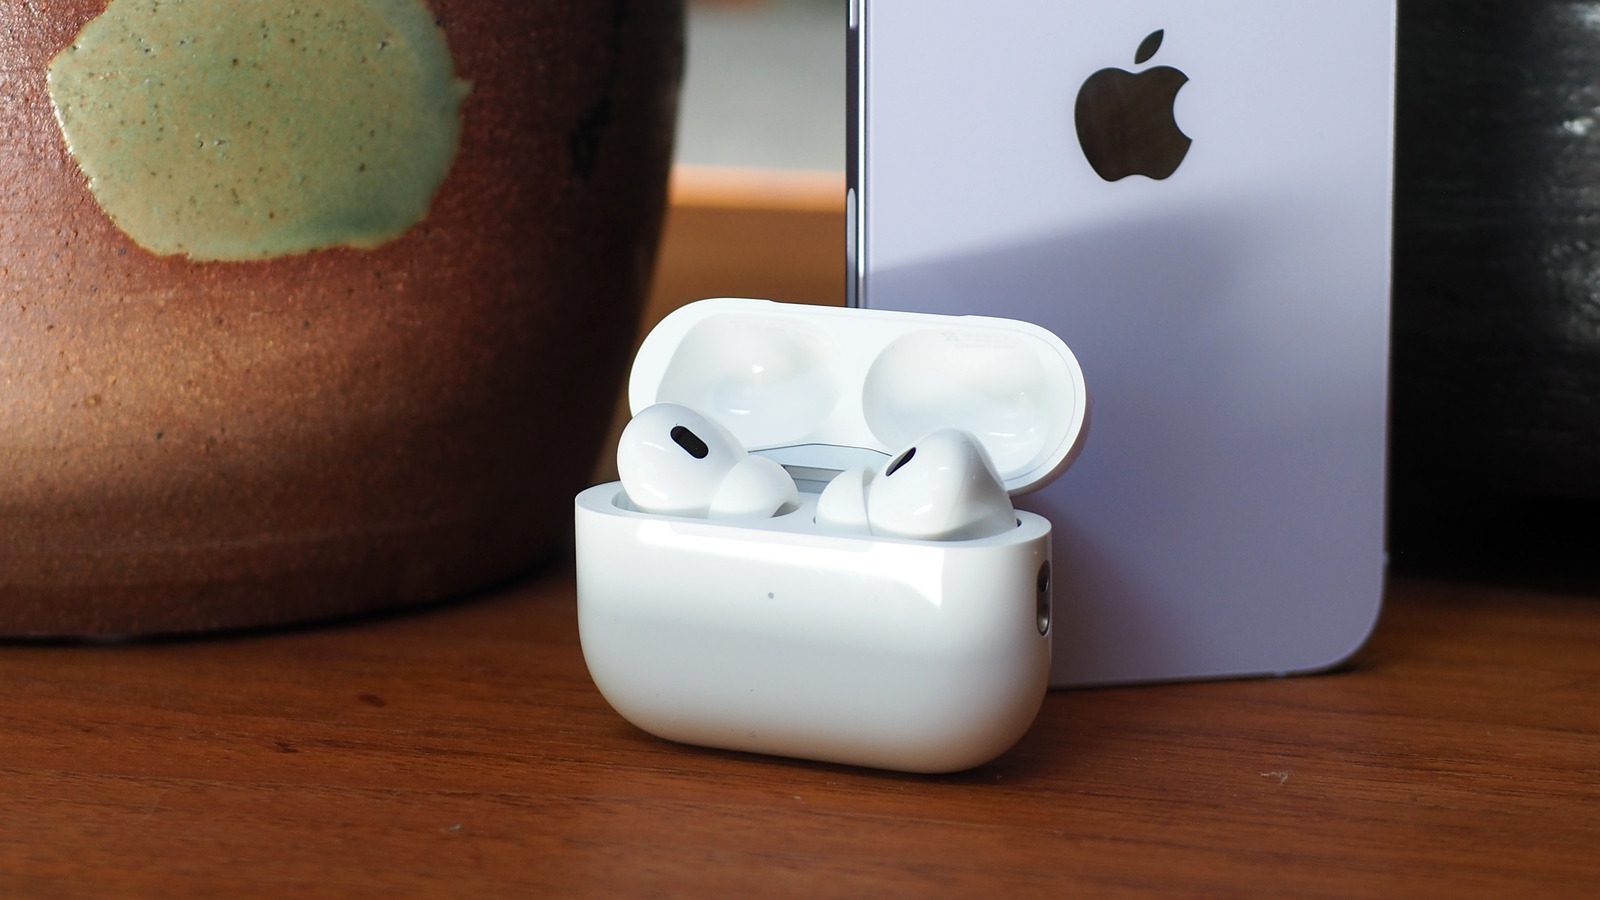 Apple Mühendisi, AirPods Pro’nun Neden Kayıpsız Sesi Desteklemediğini Açıklıyor